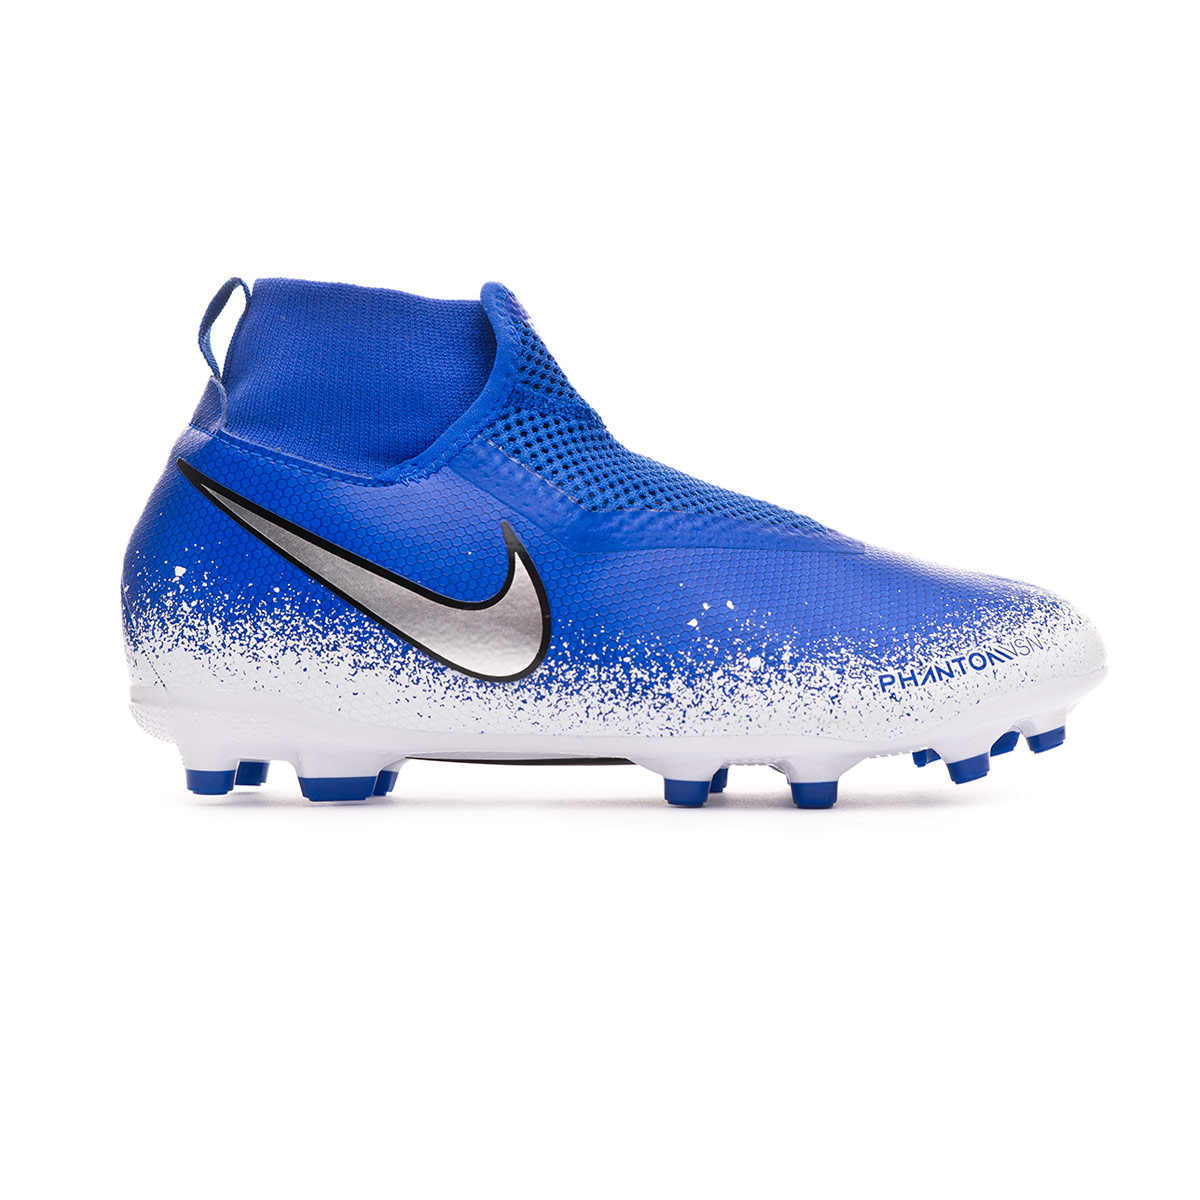 Bota de fútbol Nike Phantom Vision Academy DF FG/MG Niño Racer  blue-Chrome-White - Tienda de fútbol Fútbol Emotion